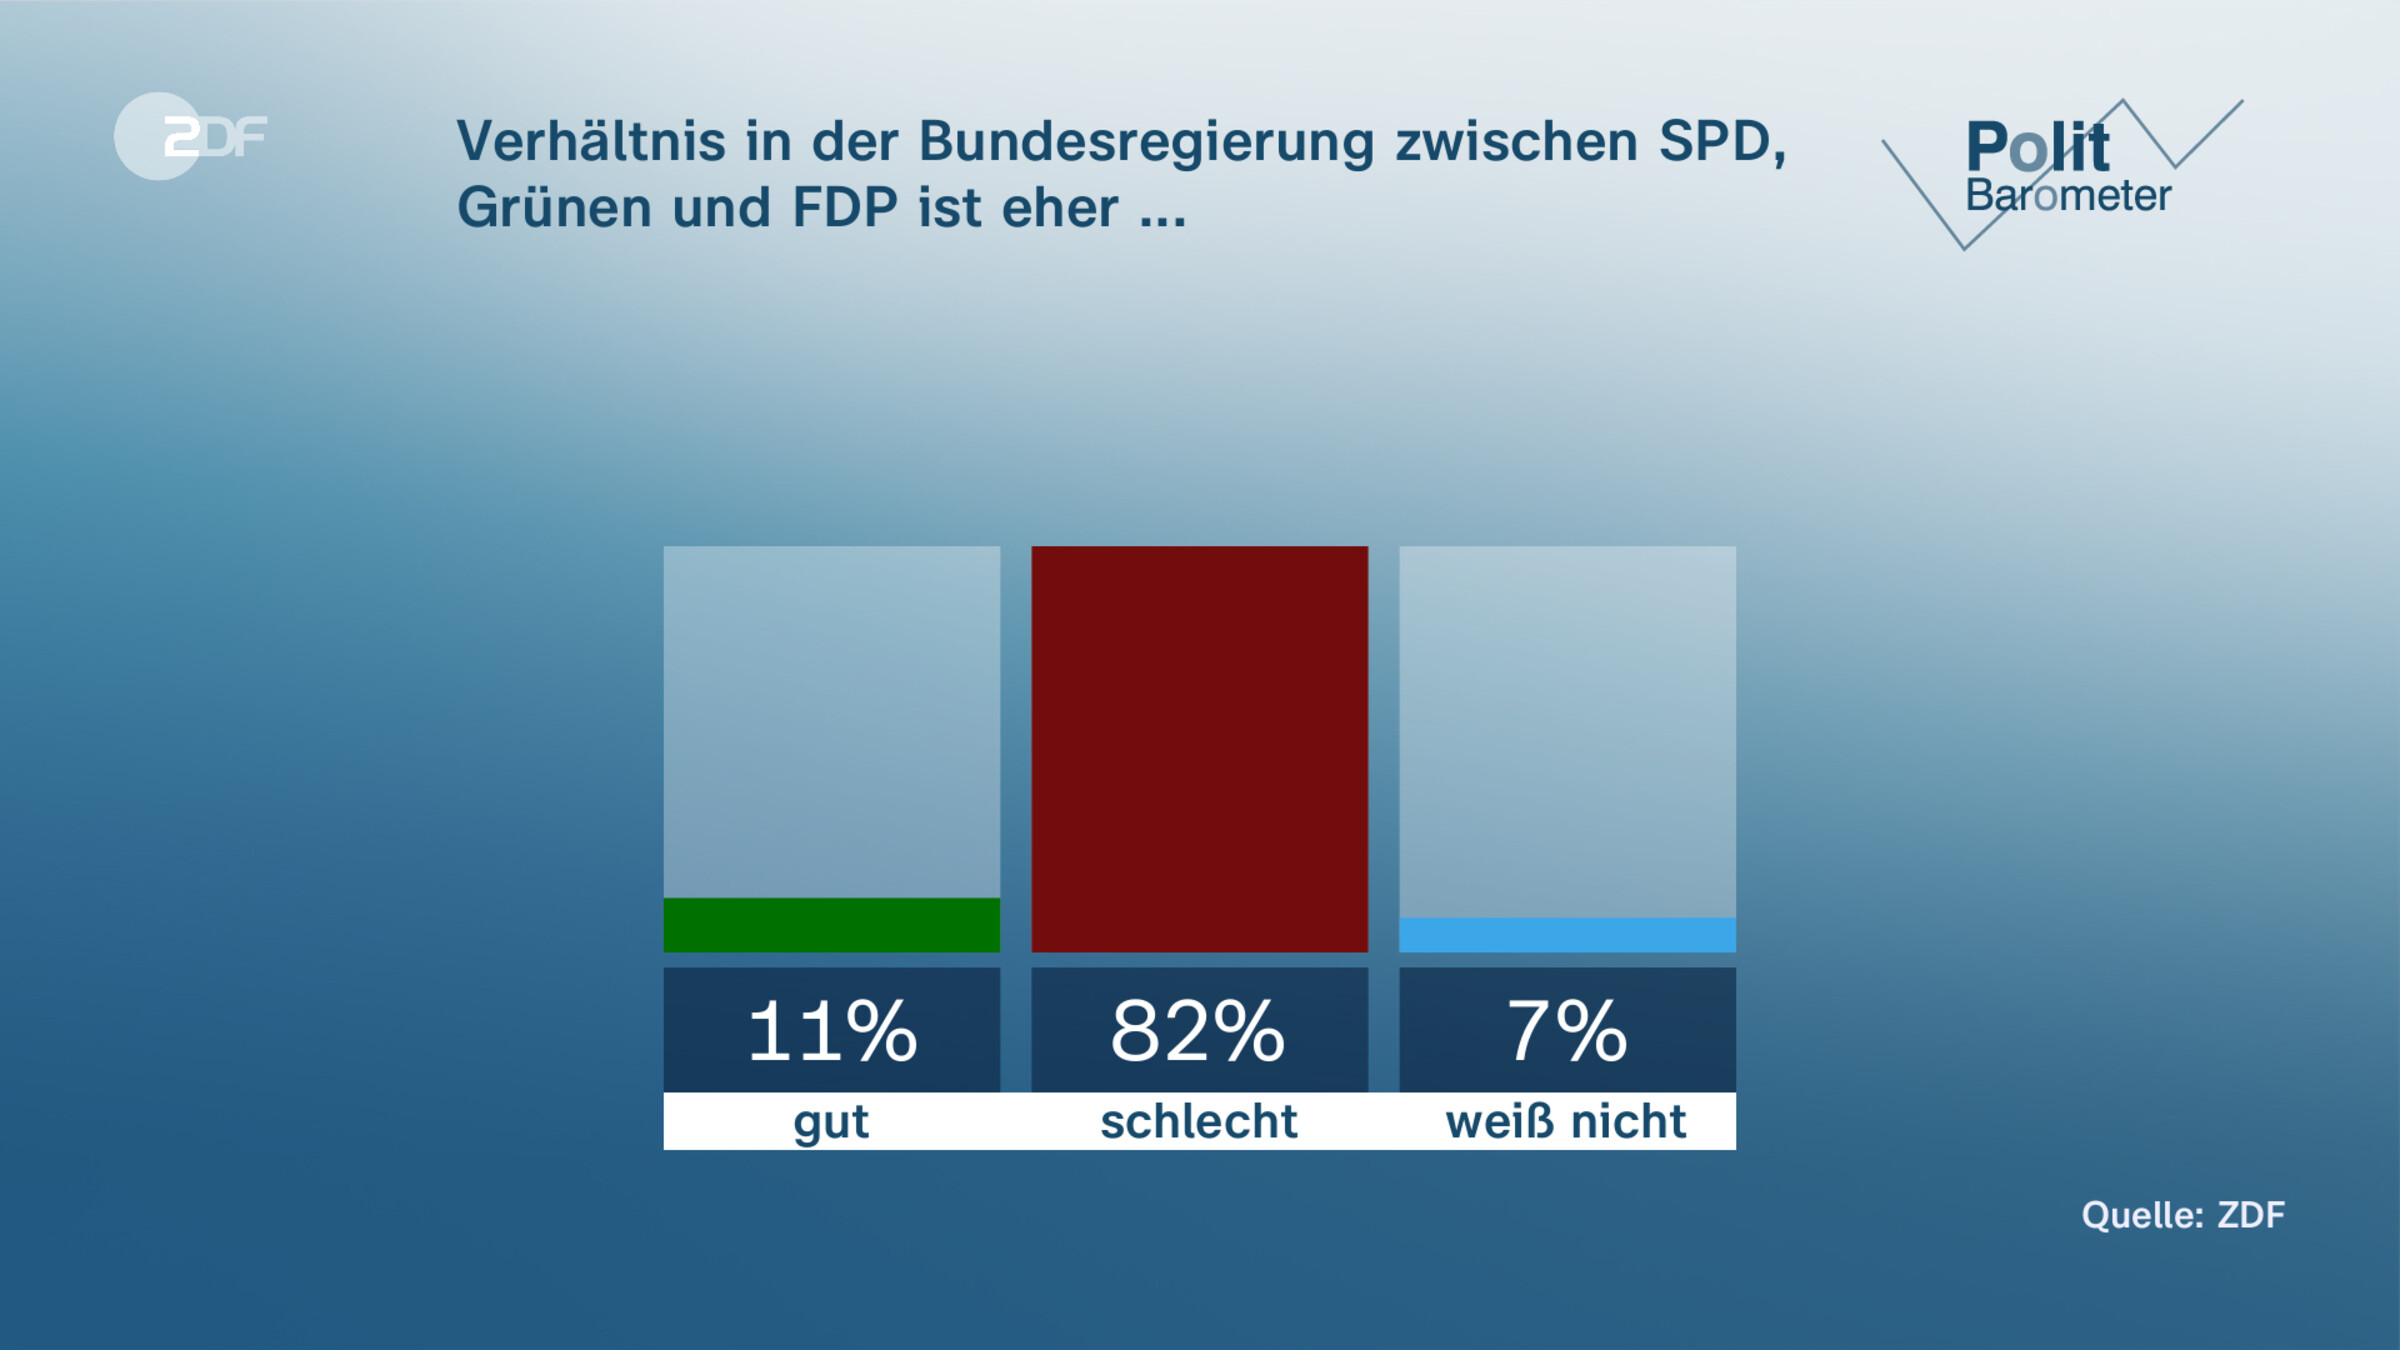 Verhältnis in der Bundesregierung zwischen SPD, Grünen und FDP ist eher ...